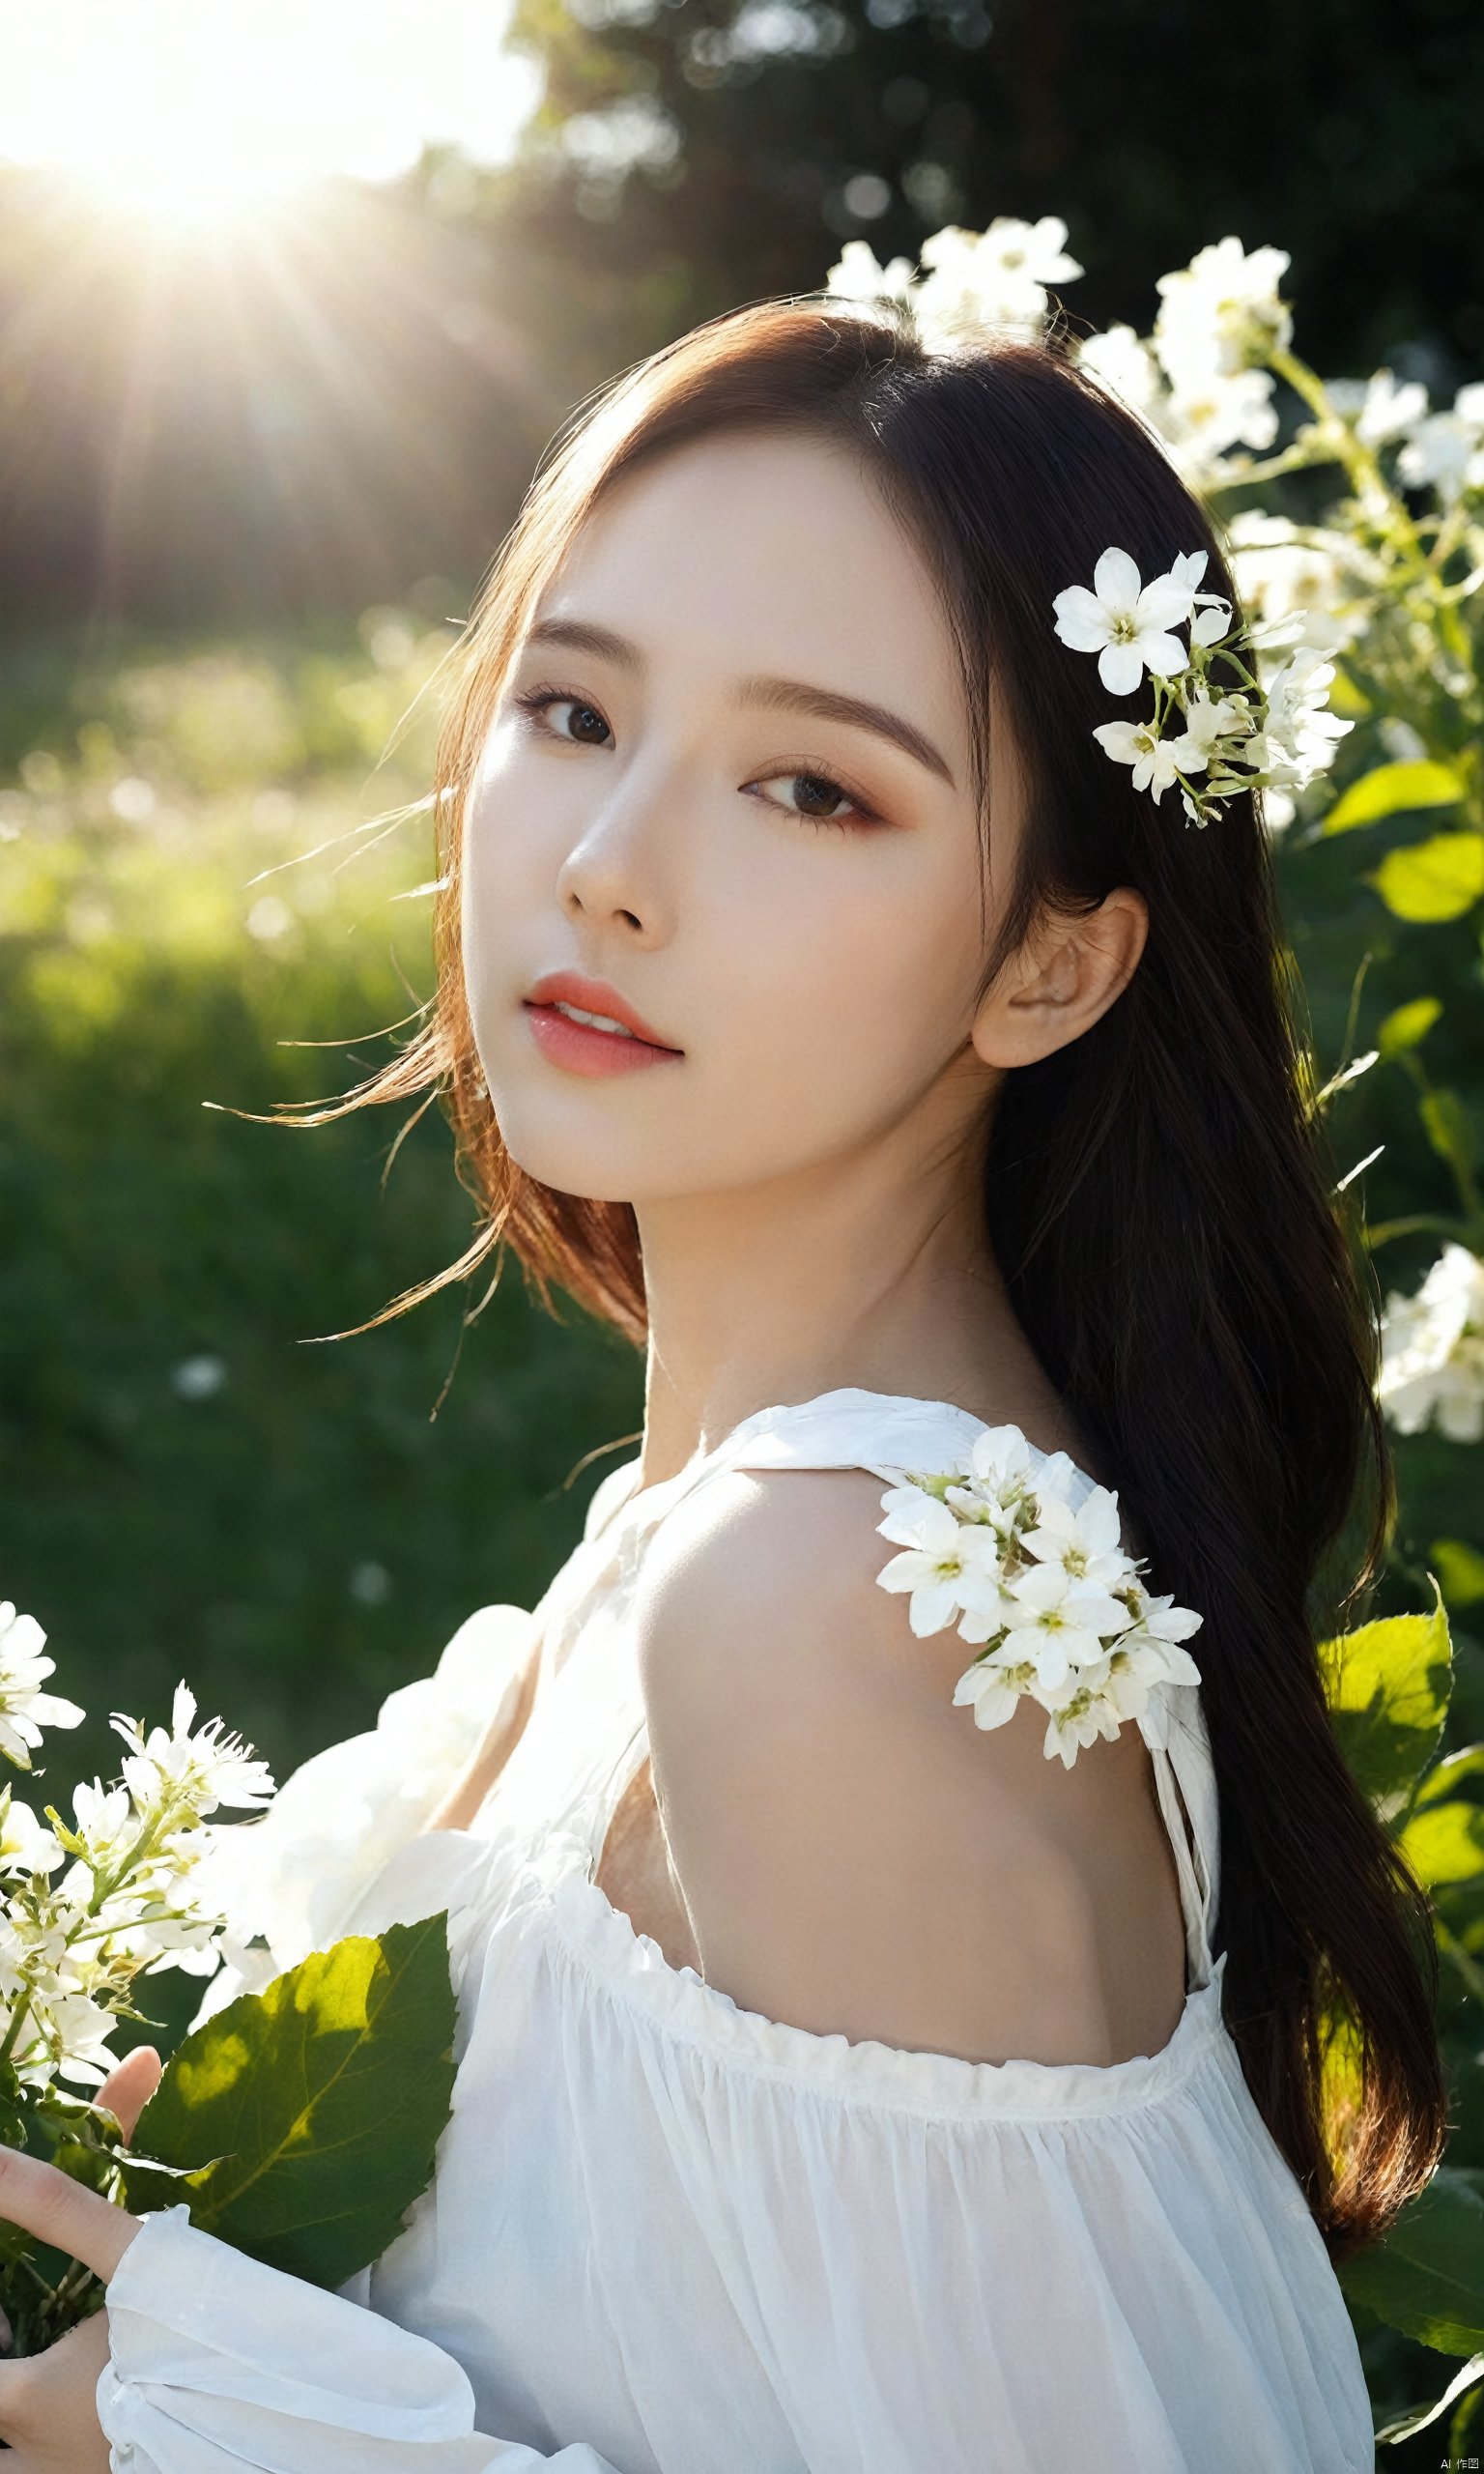  8K,raw, white flower, sunlight, hubg_beauty_girl